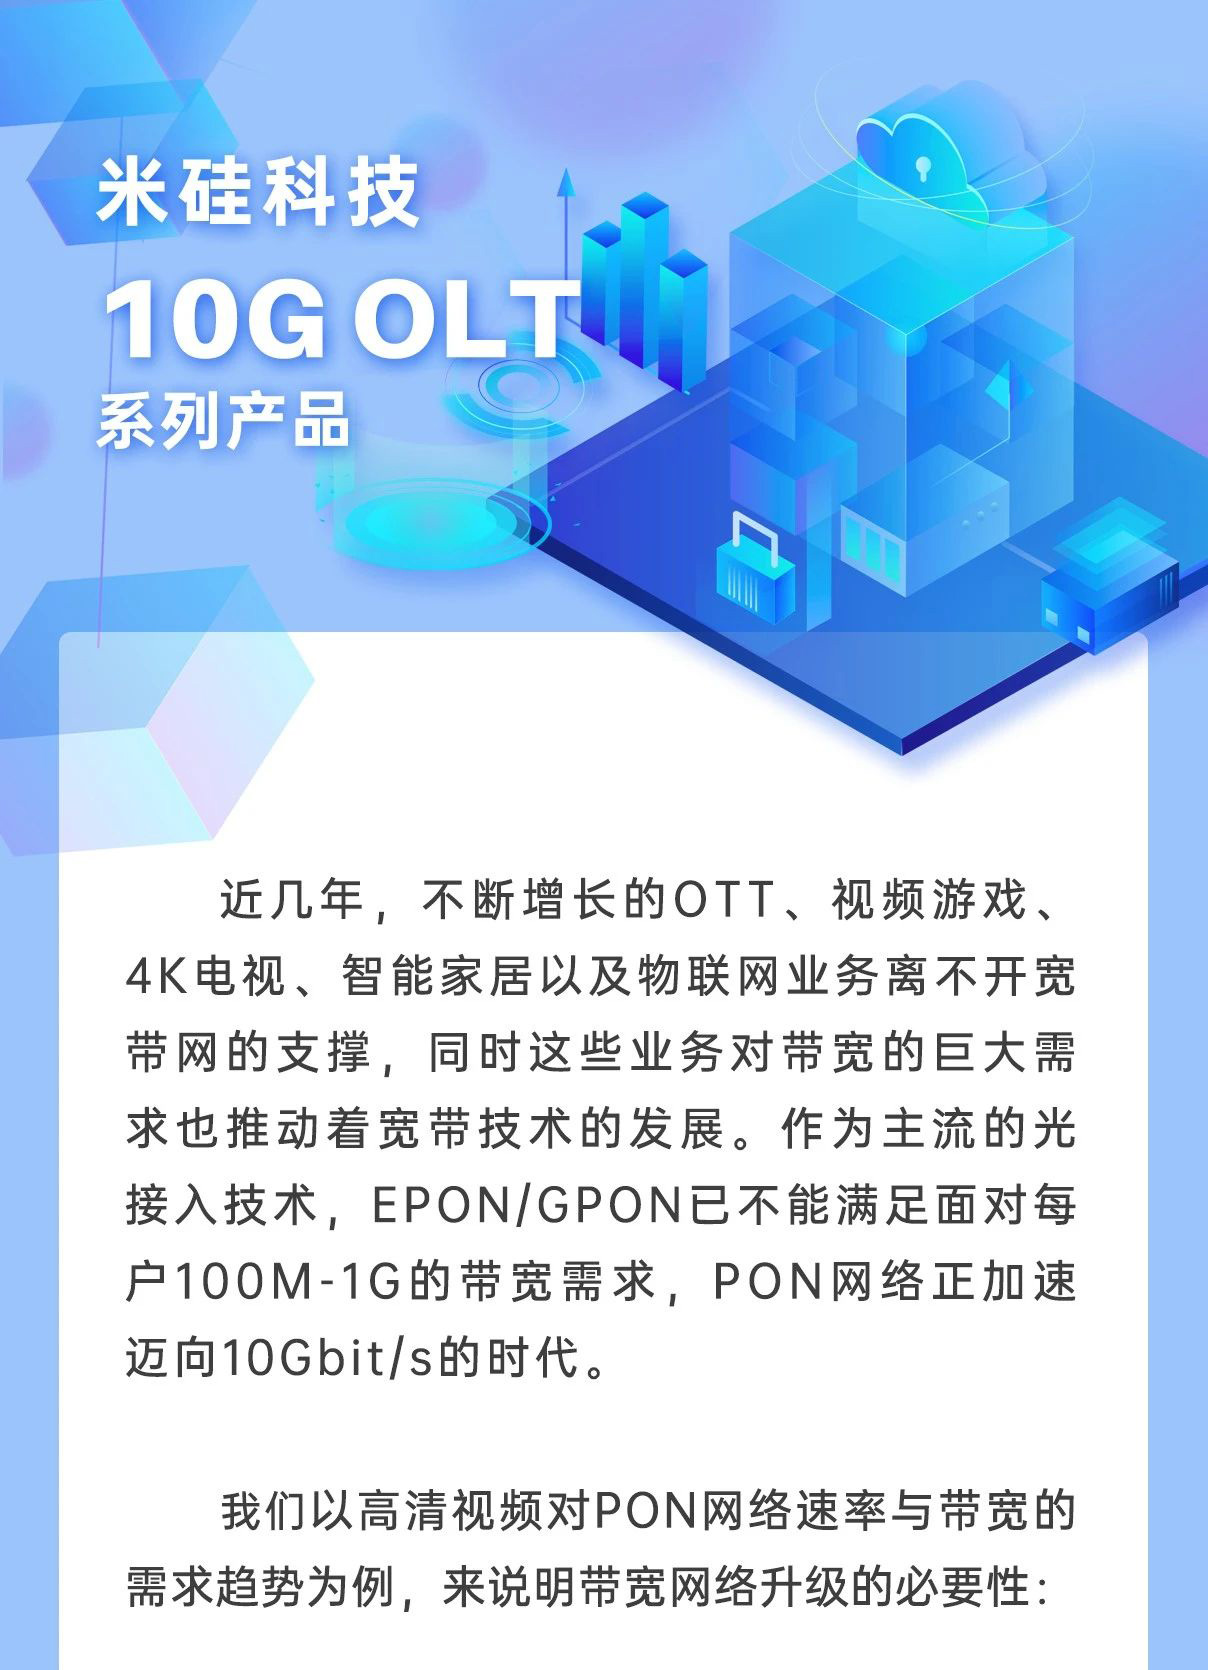 米硅科技10G OLT系列产品解析